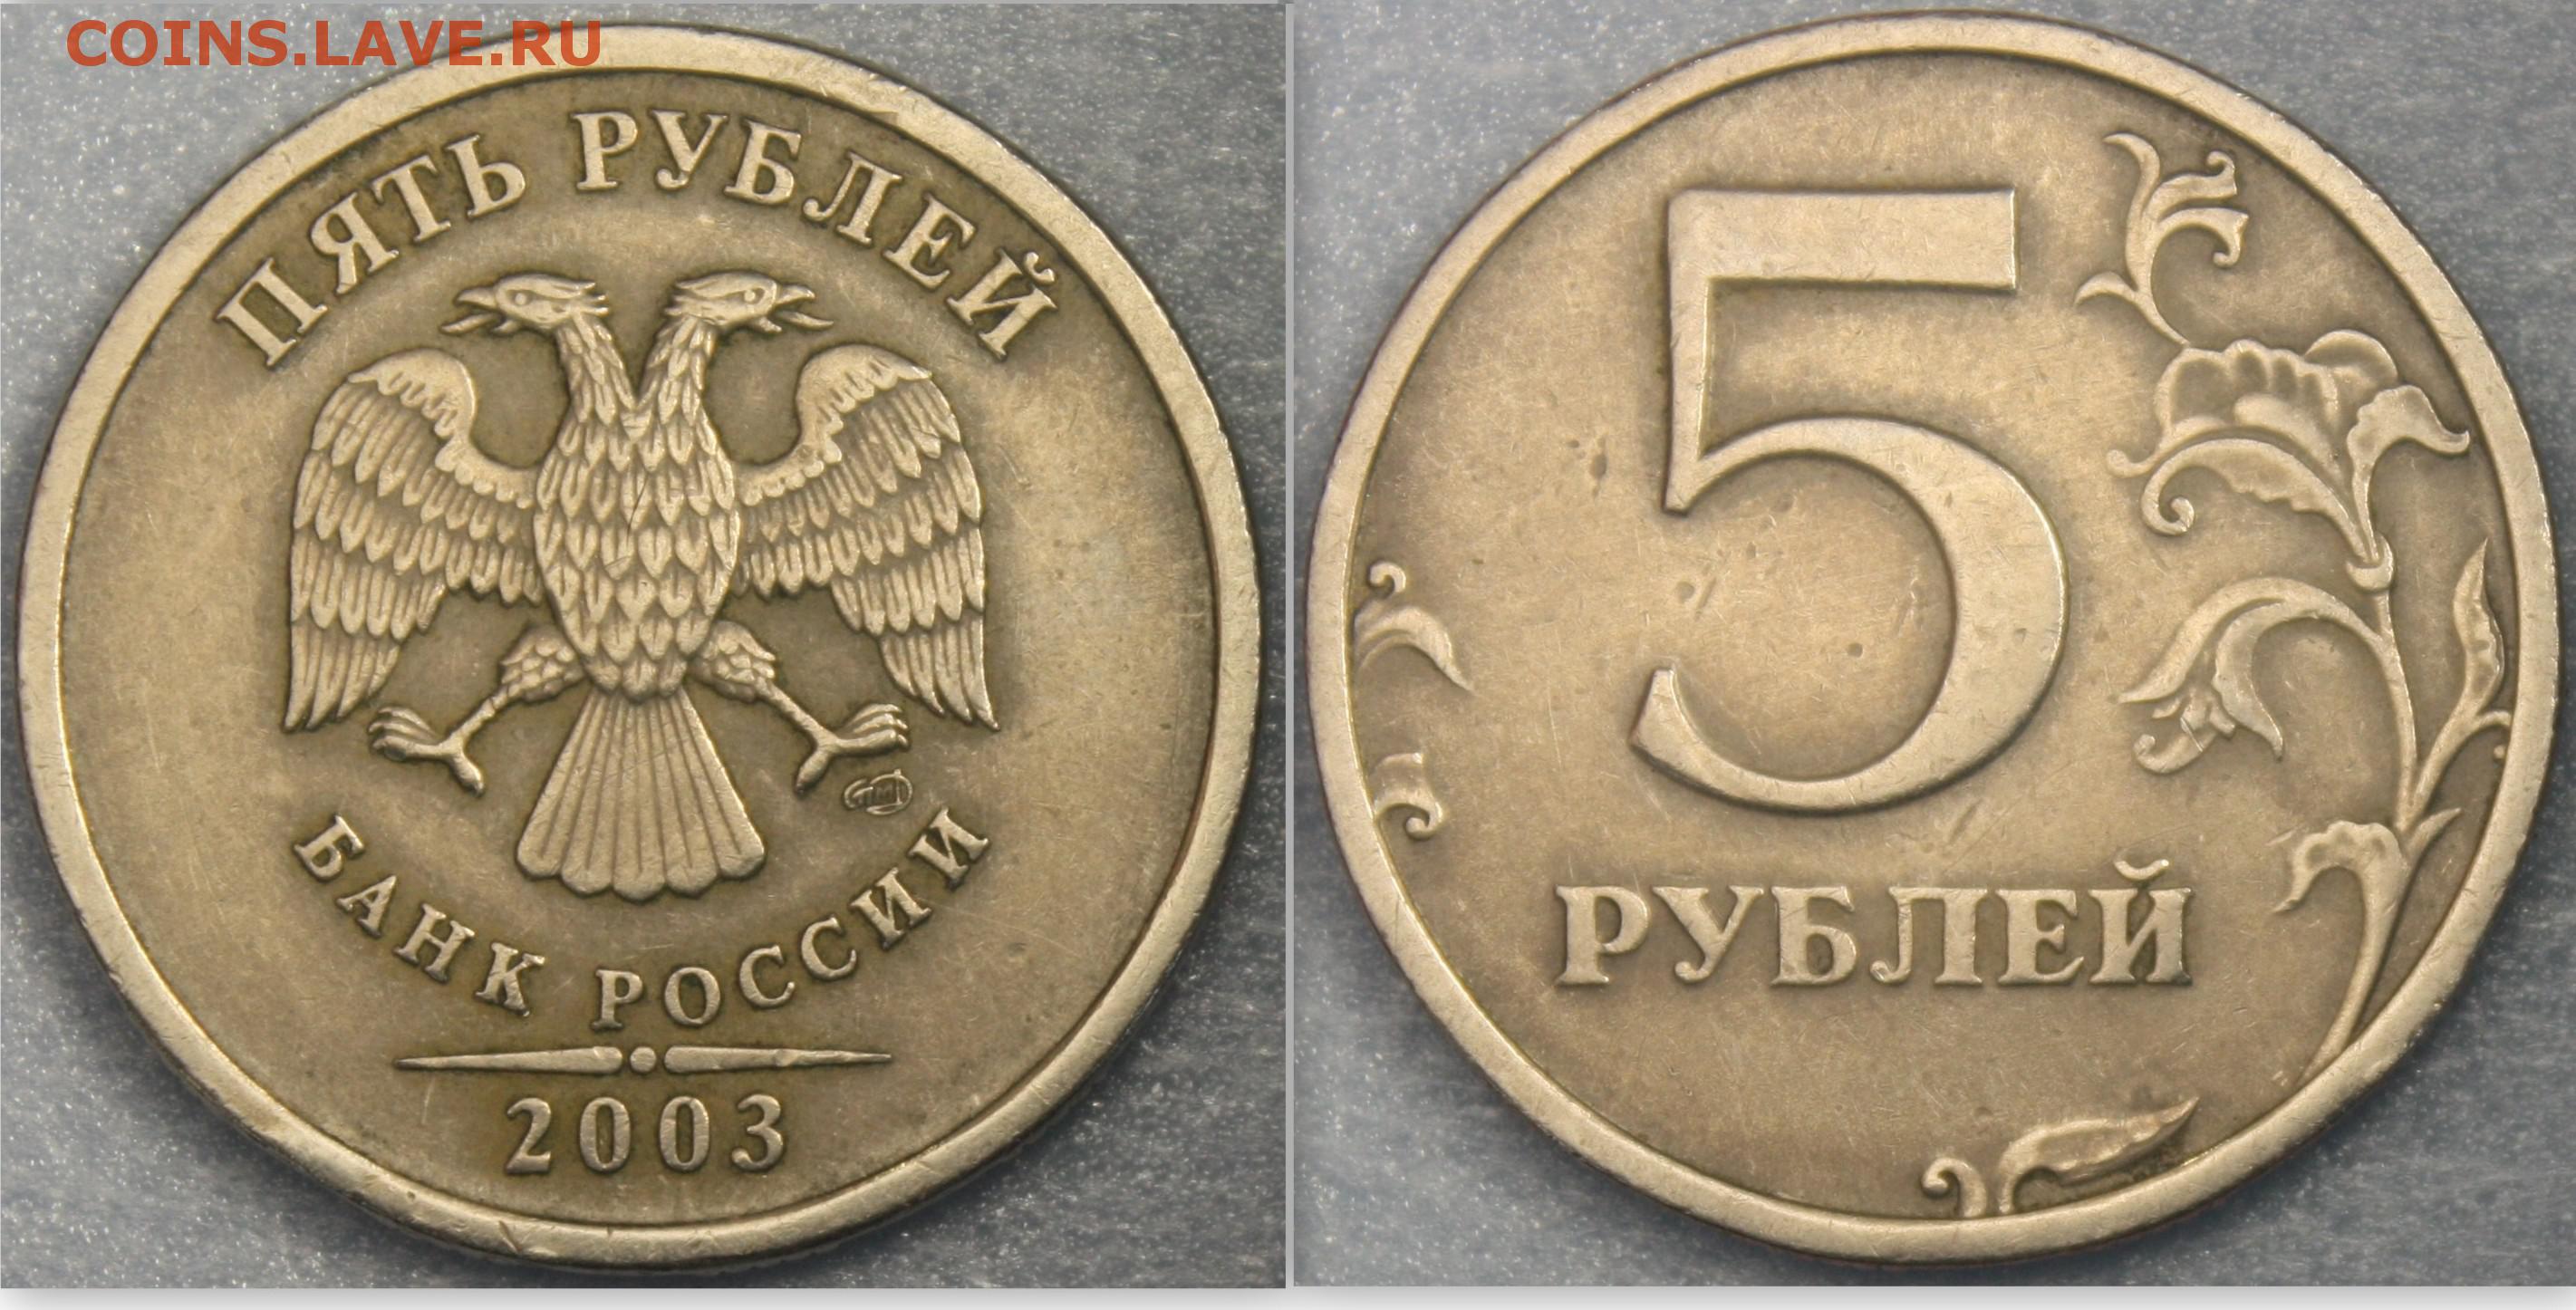 5 рублей 80. 5 Руб. 2003 СПМД. 5 Рублей 2003 СПМД. 5 Рублей 2003. Монета 5 рублей 2003.